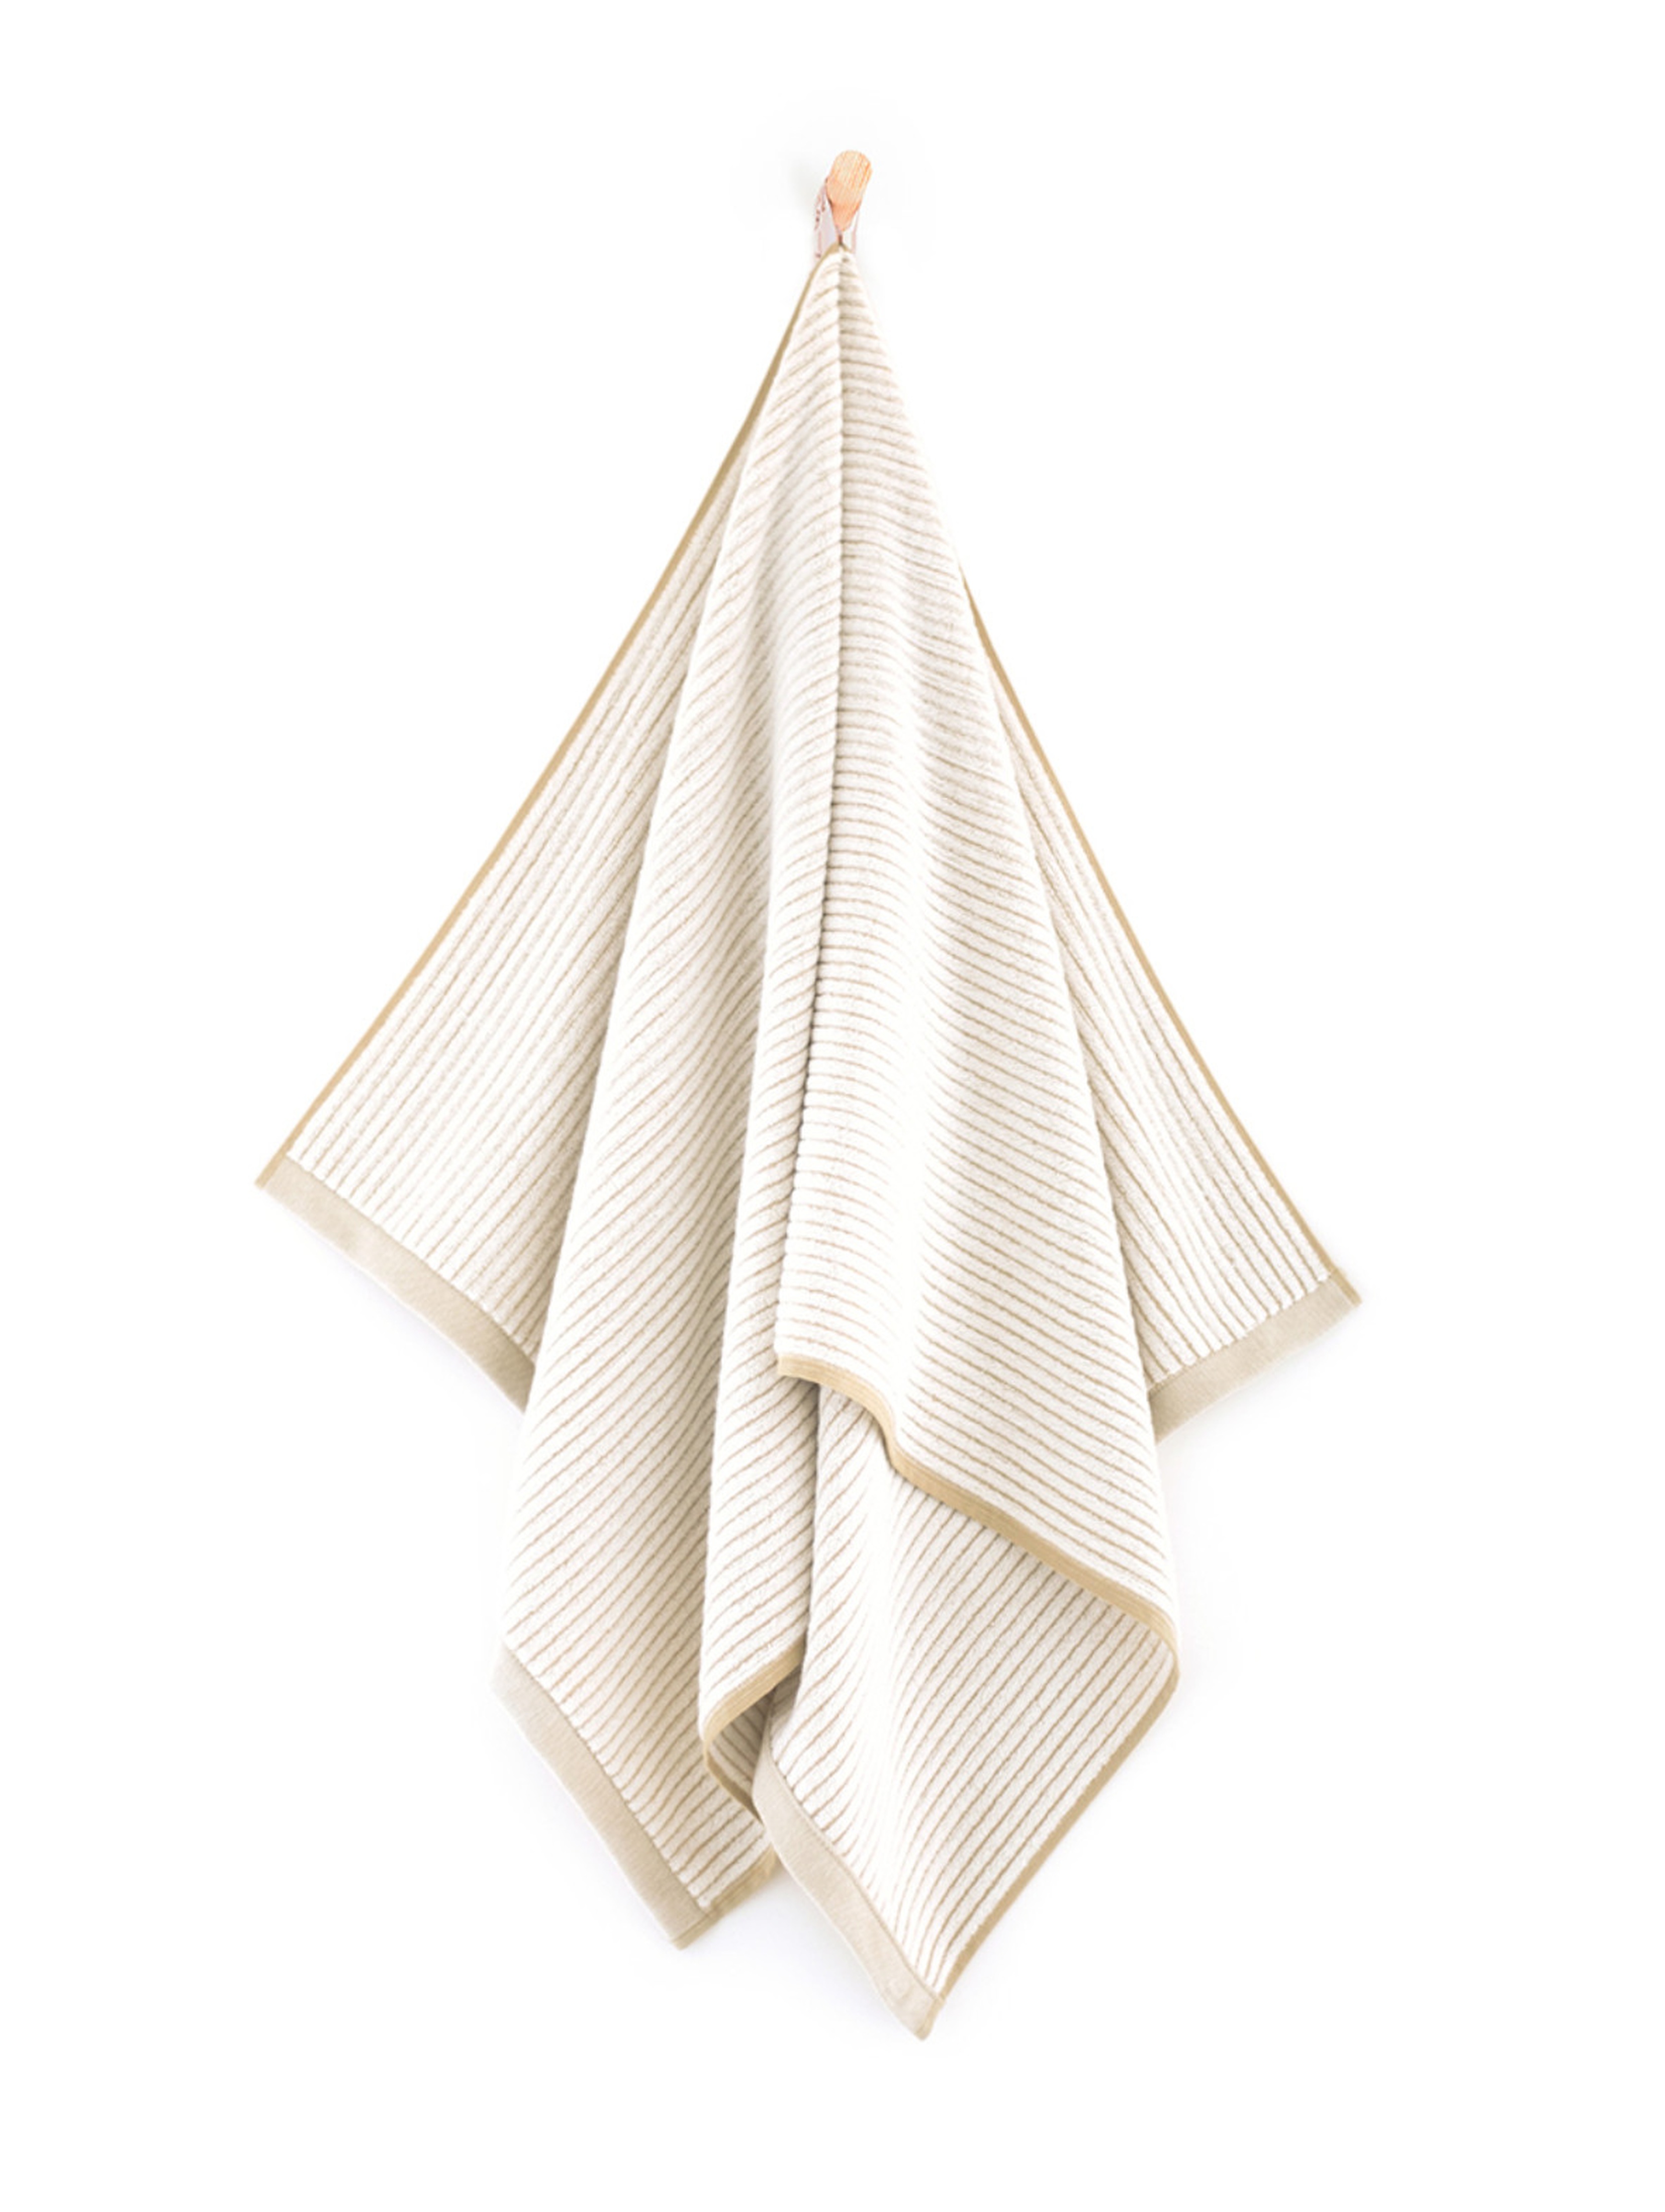 Ręcznik Malme z bawełny egipskiej beżowy 50x100cm